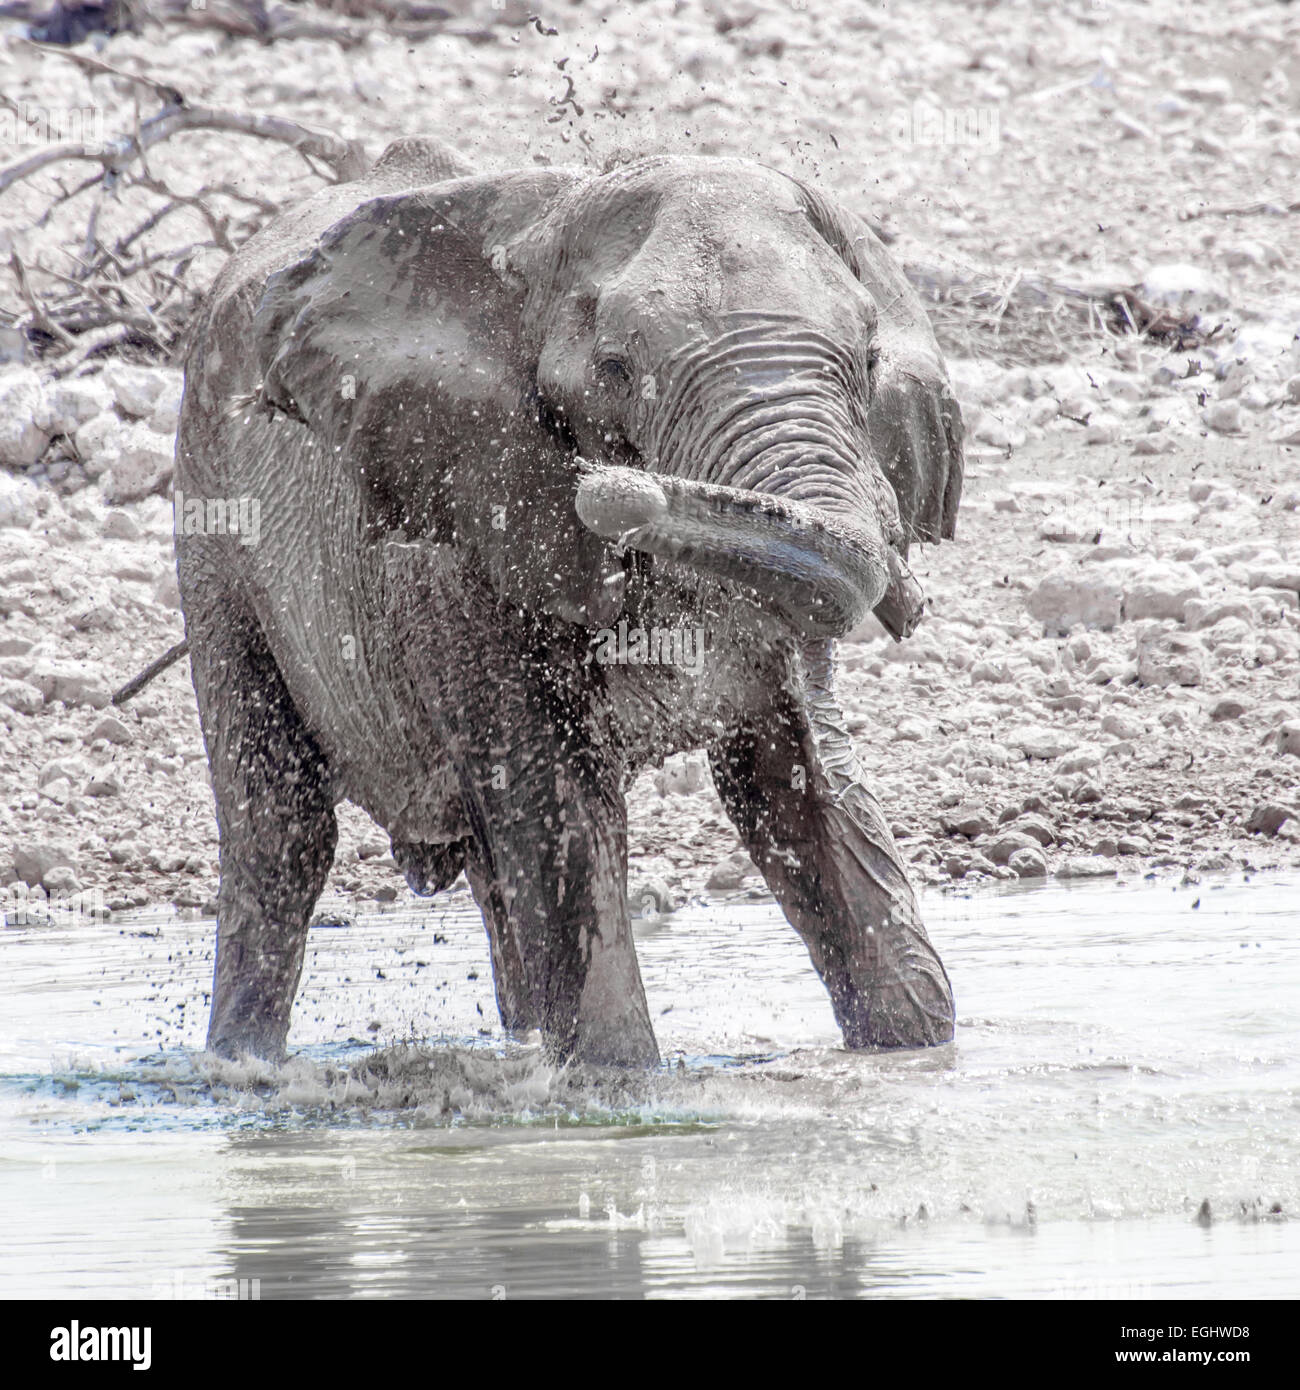 Un elefante gioca nell'acqua in corrispondenza di un foro di bere. Foto Stock